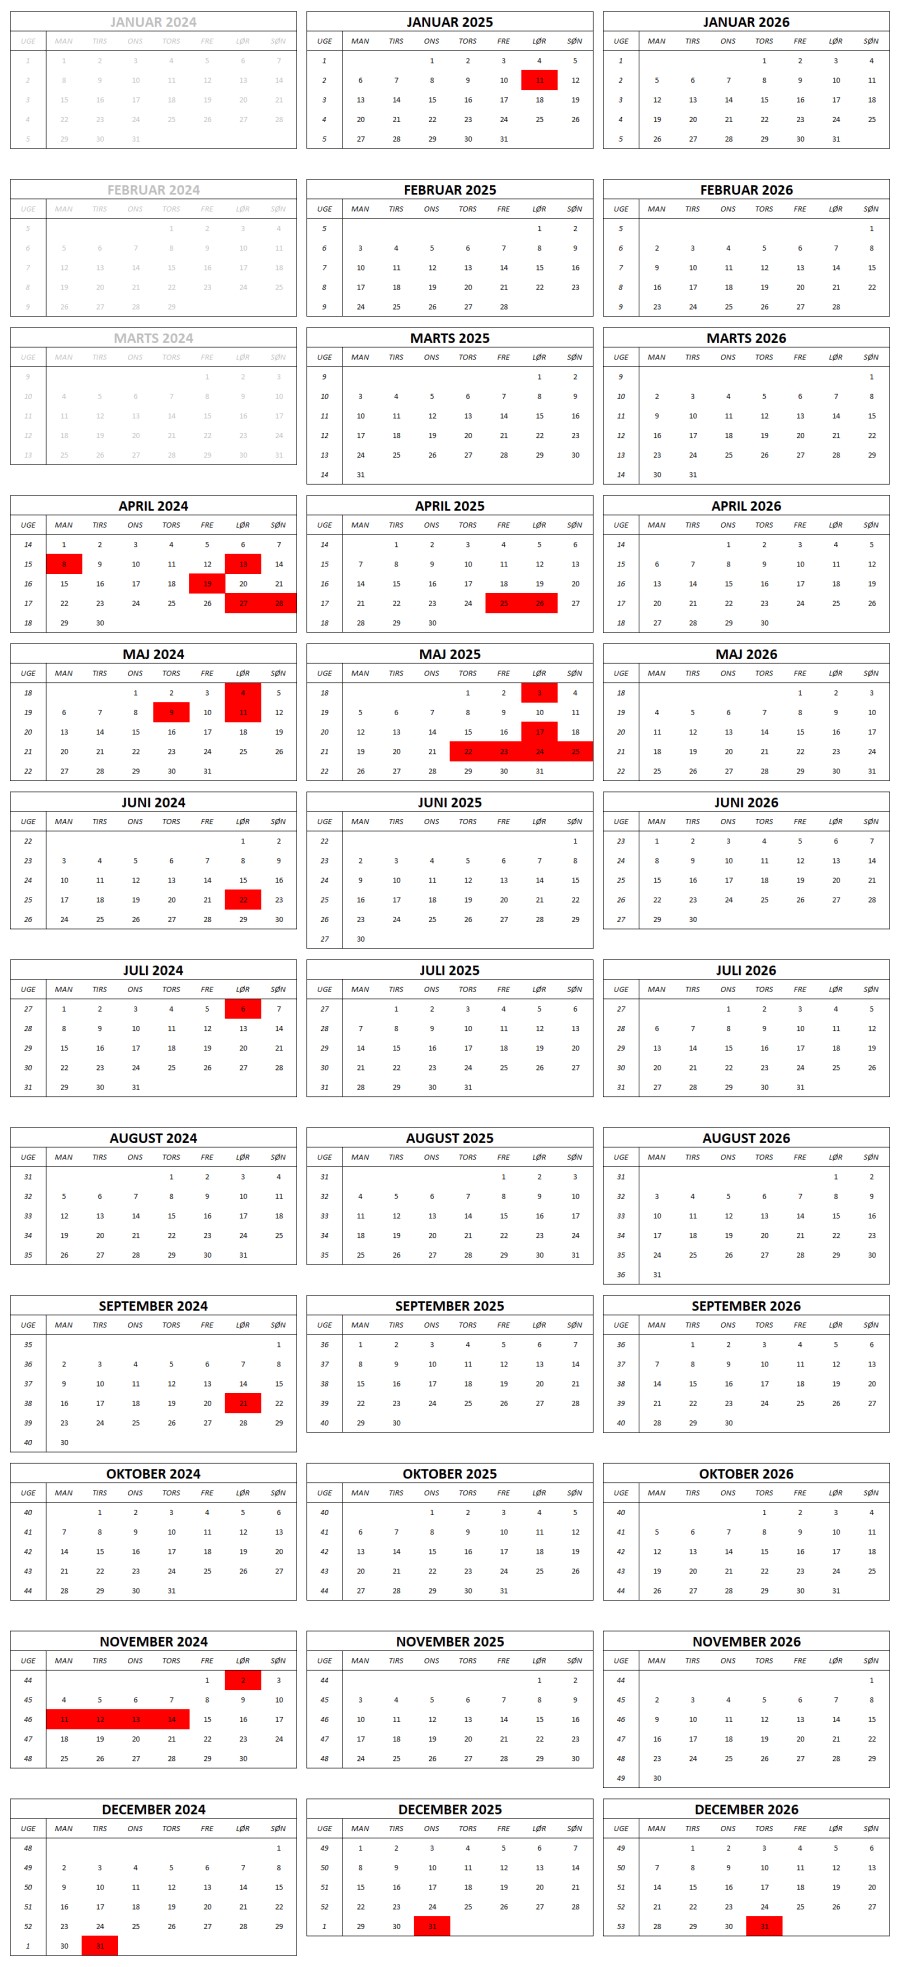 Kalenderoversigt for Atterup Forsamlingshus